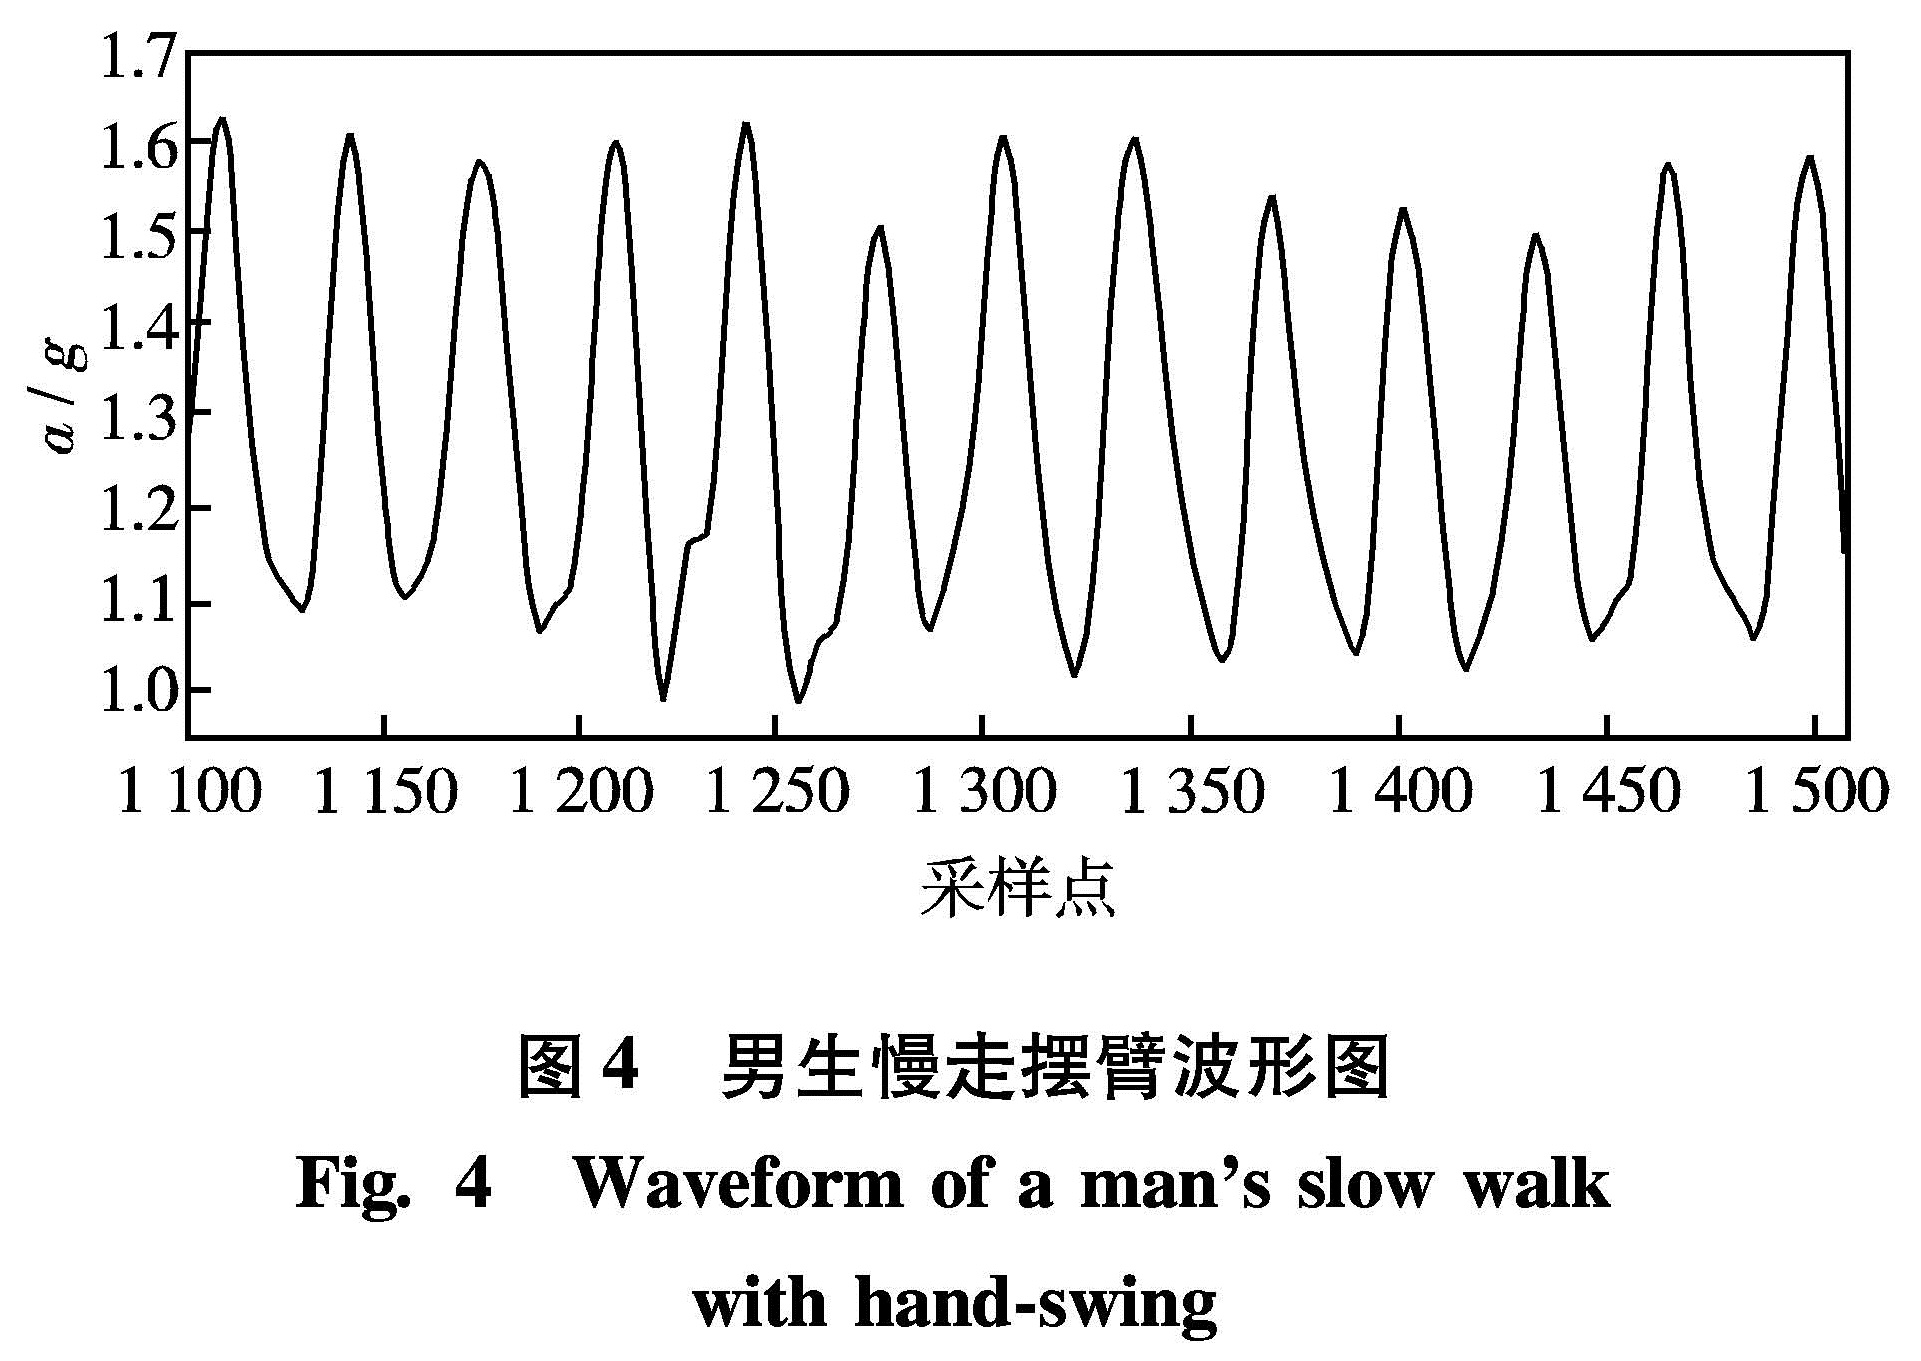 图4 男生慢走摆臂波形图<br/>Fig.4 Waveform of a man's slow walk with hand-swing